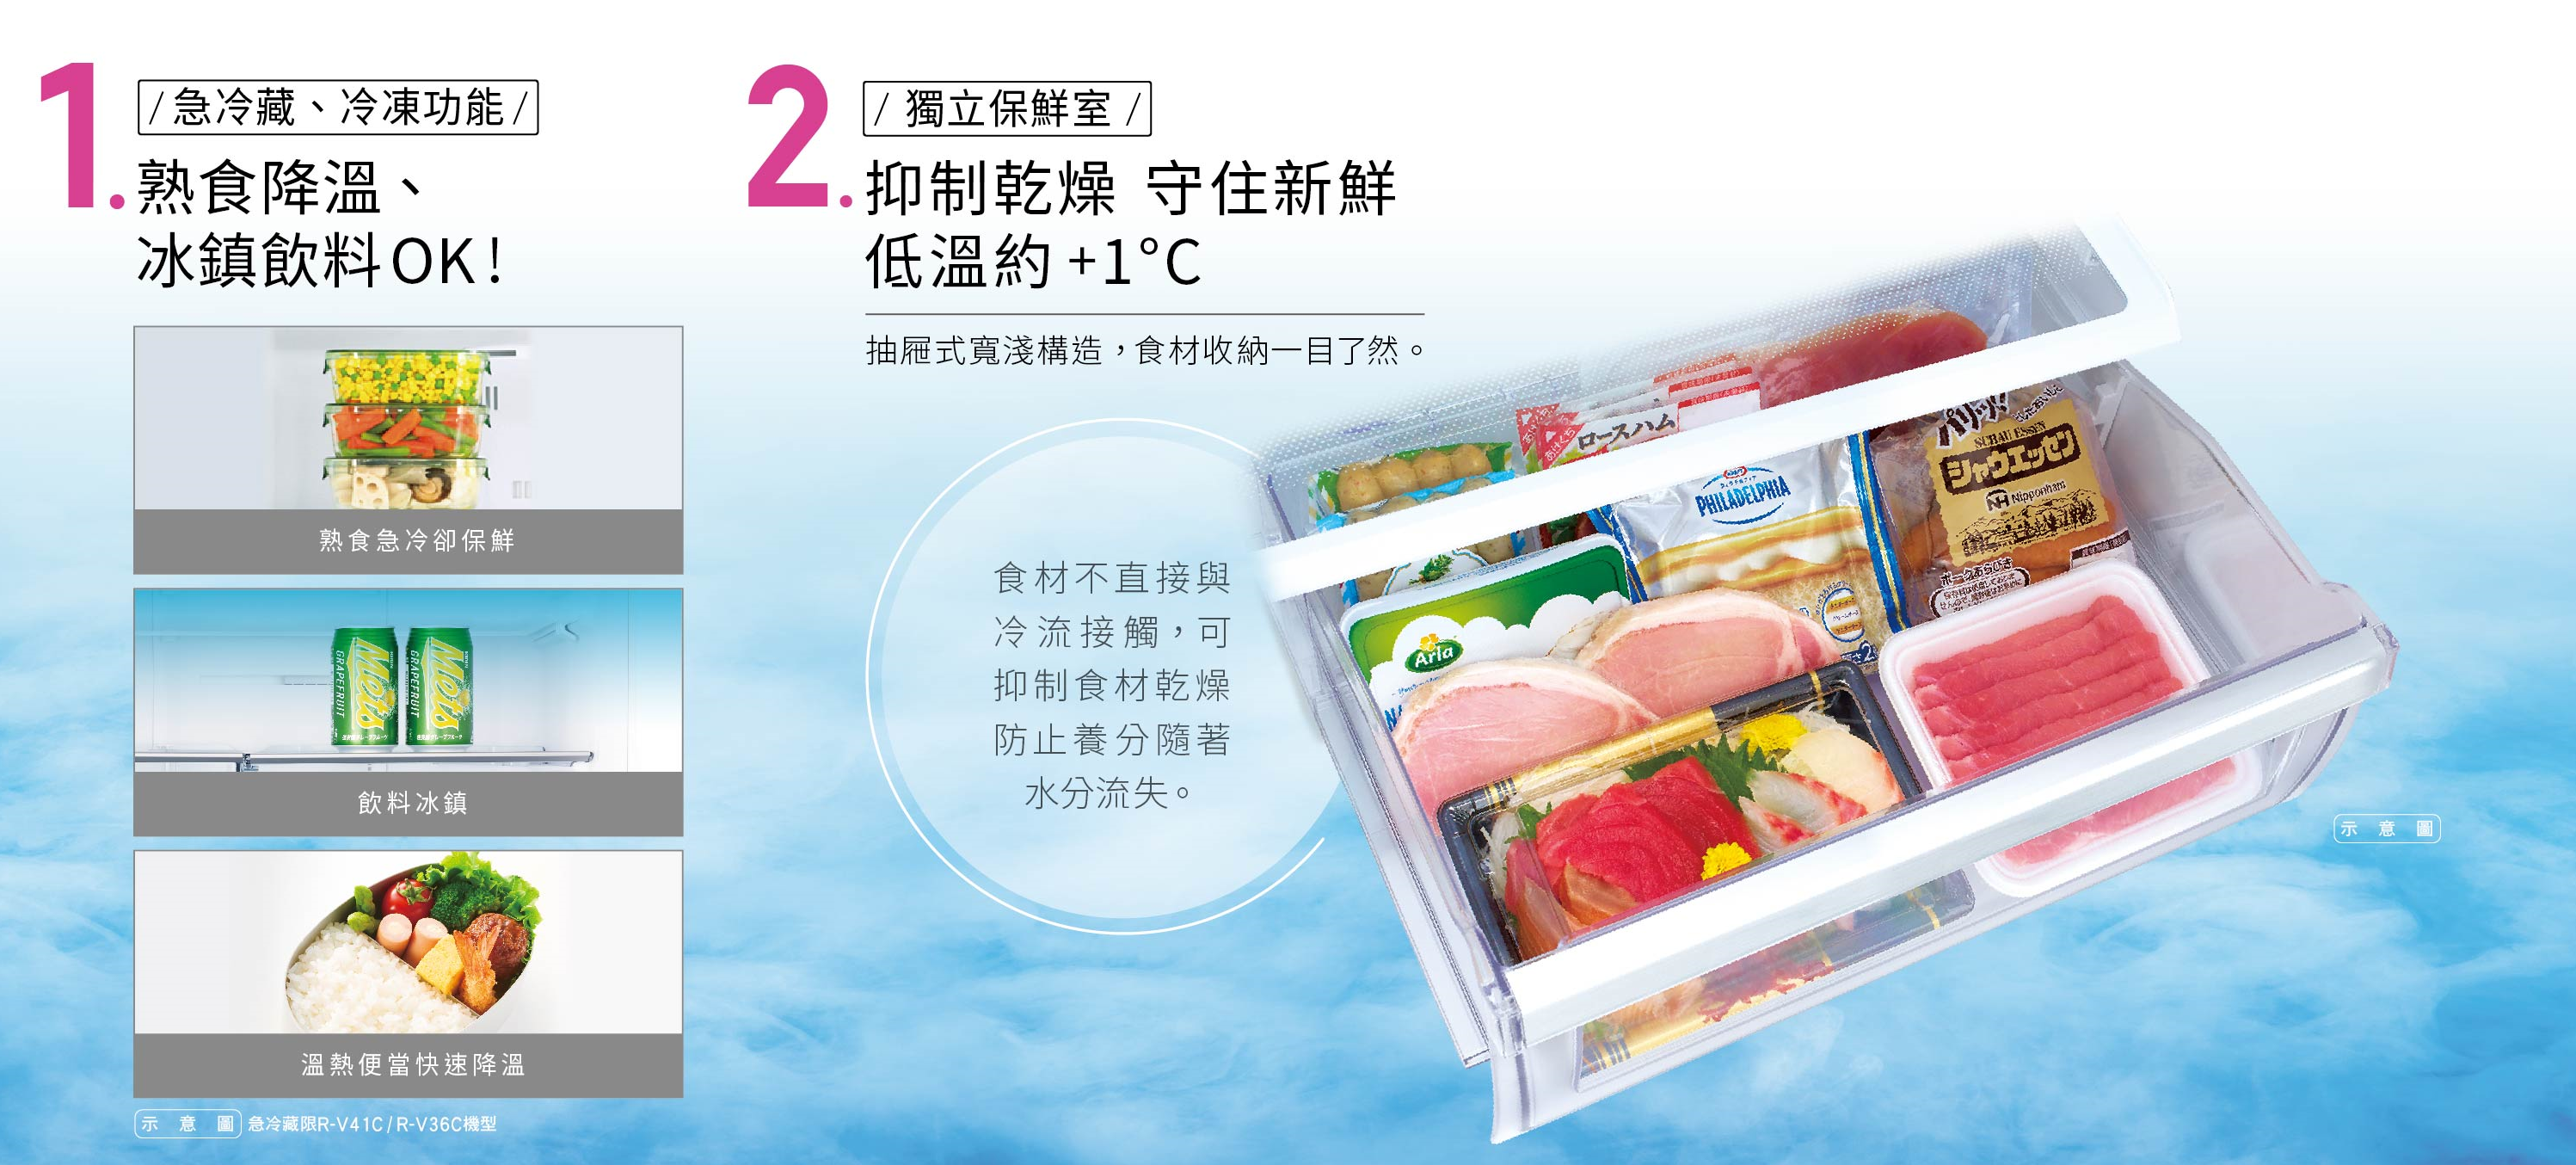 急冷藏、急冷凍、獨立保鮮室(約 1℃)